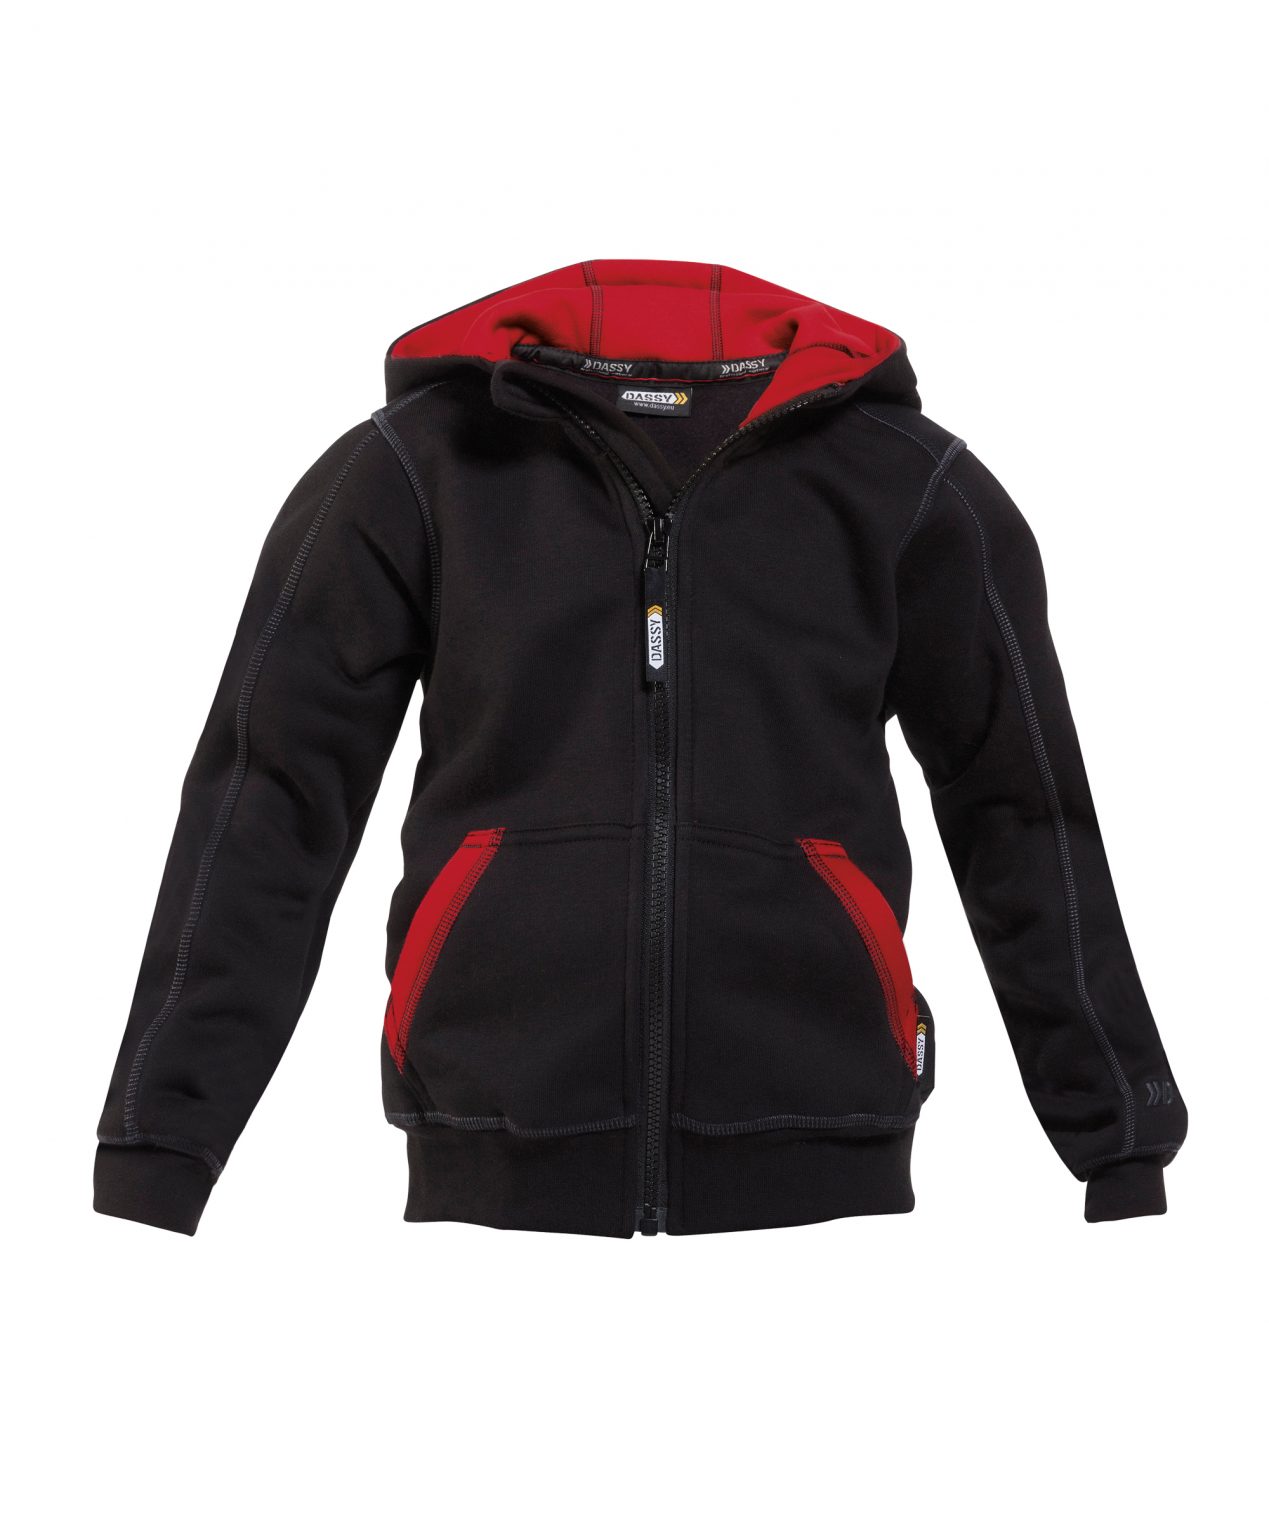 watson kids hooded zip up sweatshirt black red front